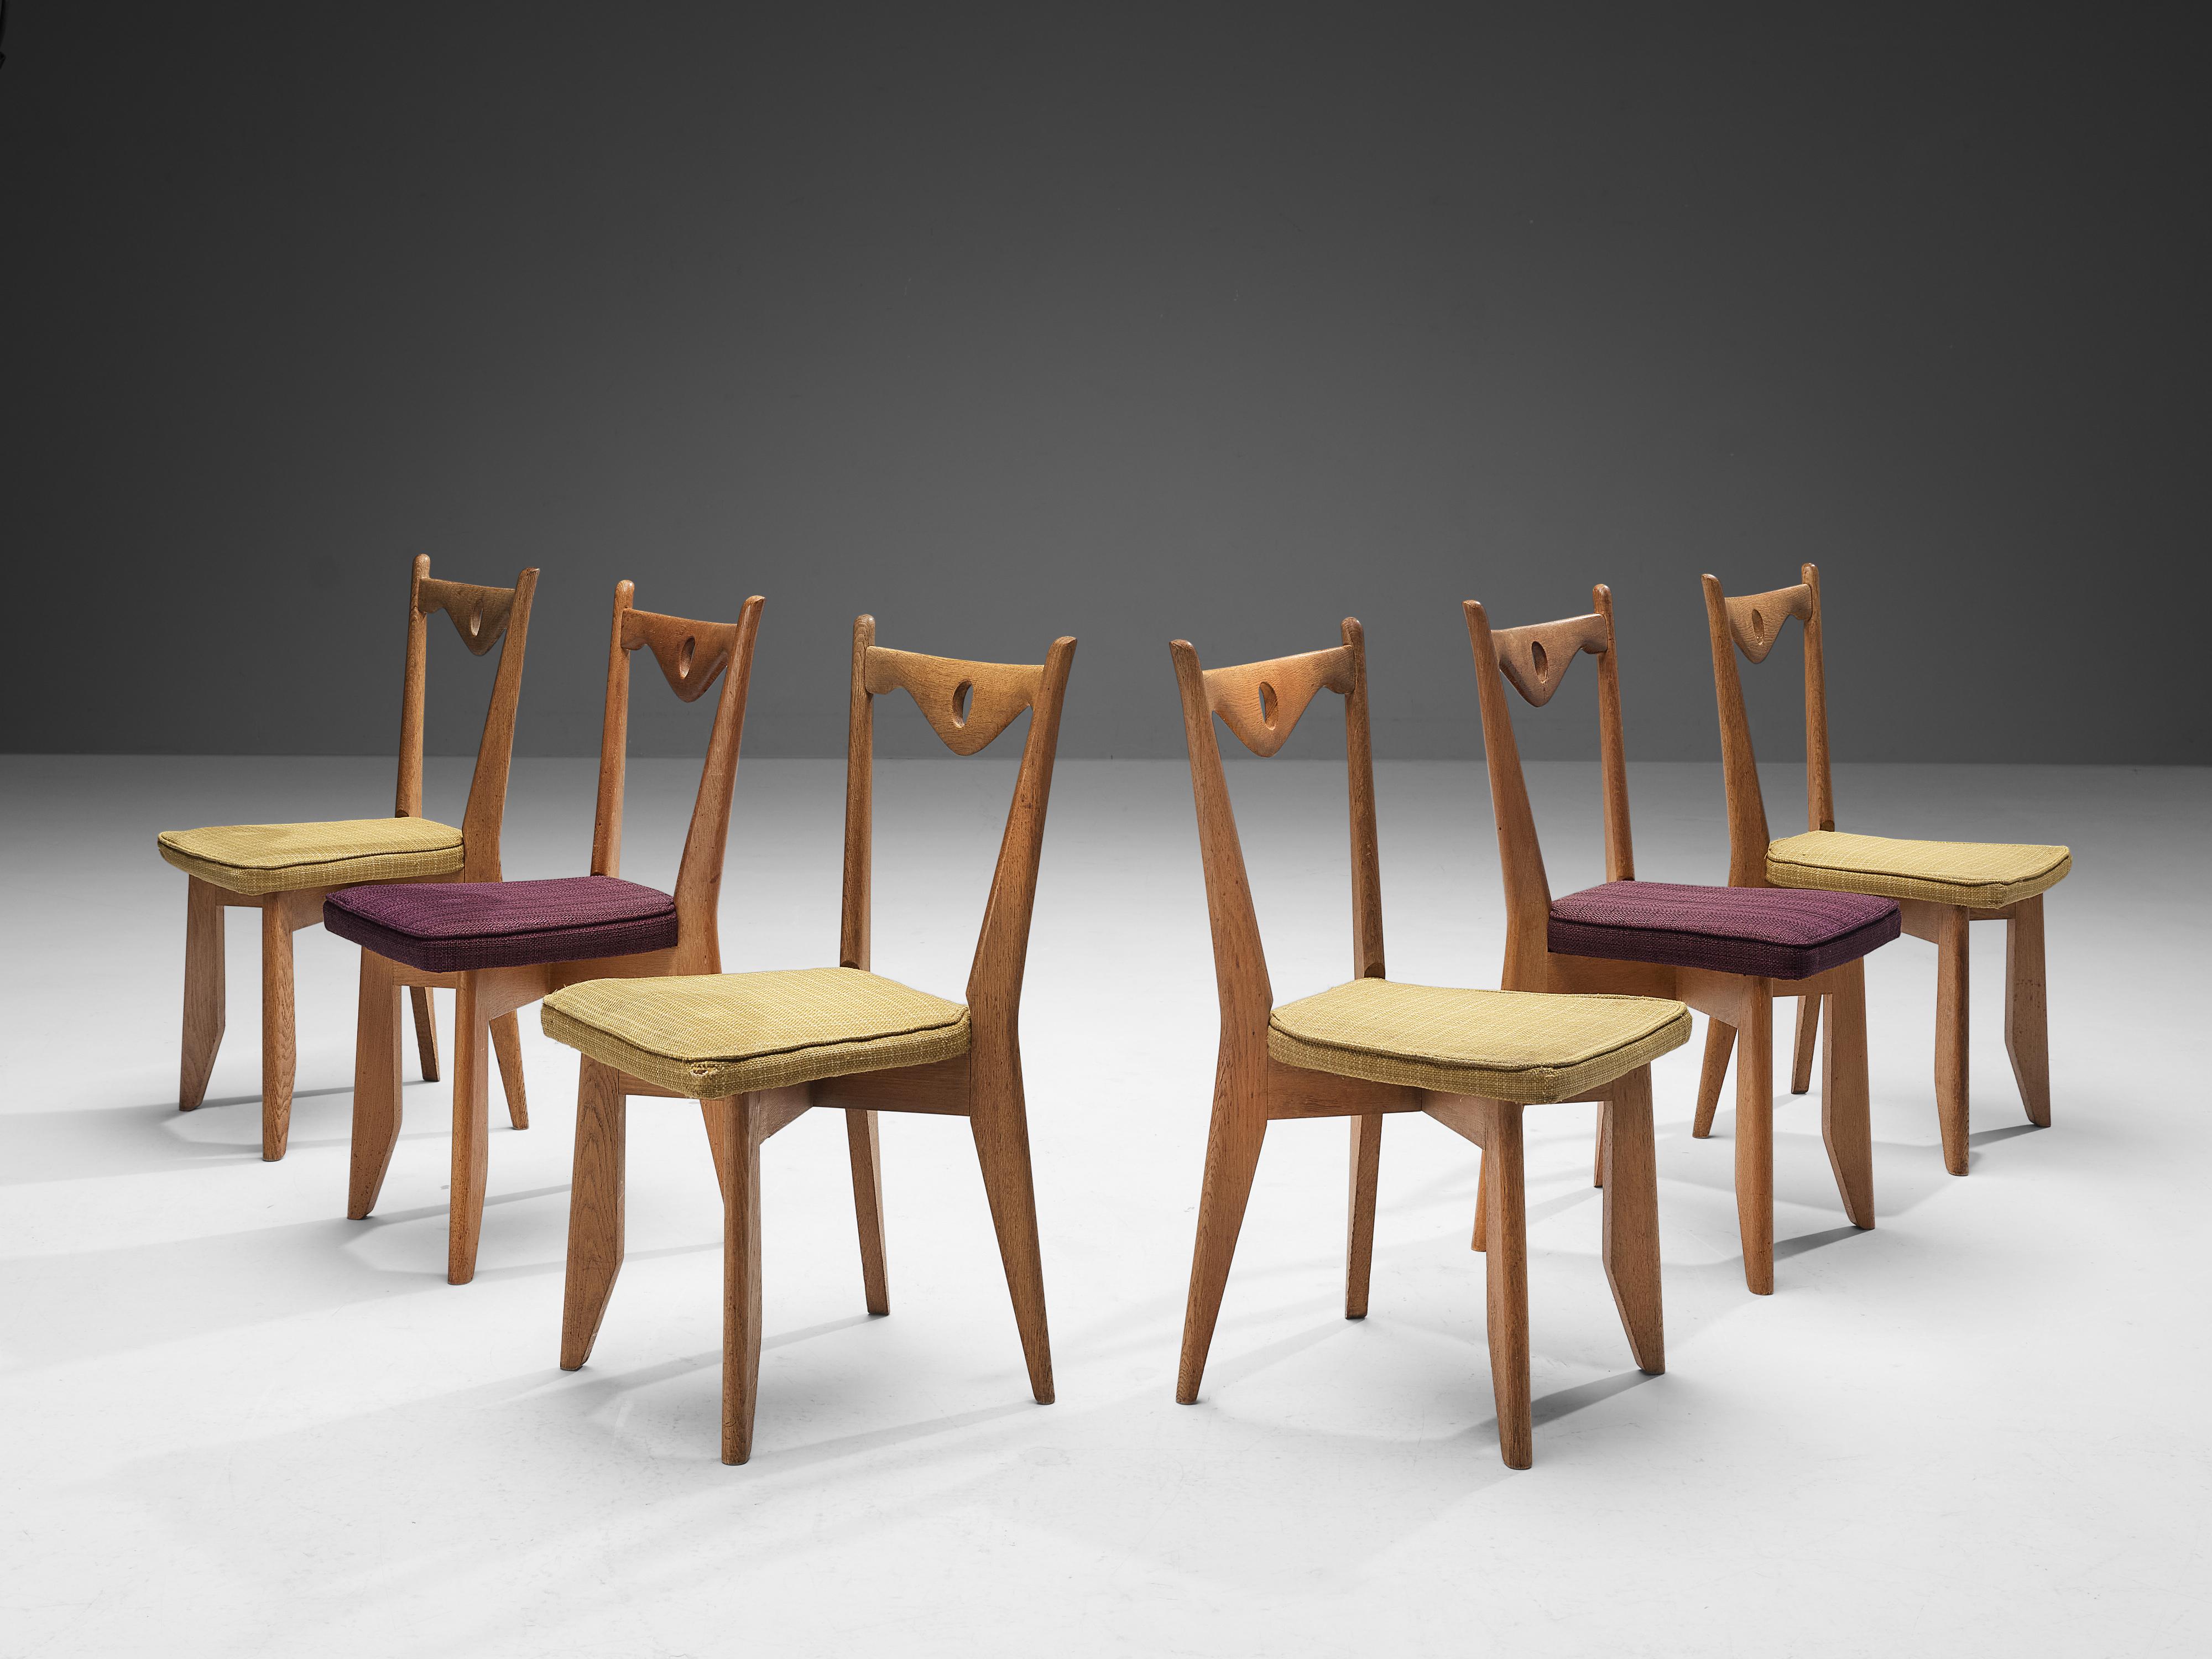 Guillerme et Chambron für Votre Maison, Satz von sechs Esszimmerstühlen, Eiche, Stoff, Frankreich, 1960er Jahre.

Diese Stühle haben charakteristische Rahmen mit konischen Beinen und eine skulpturale Rückenlehne mit einem nach unten gerichteten